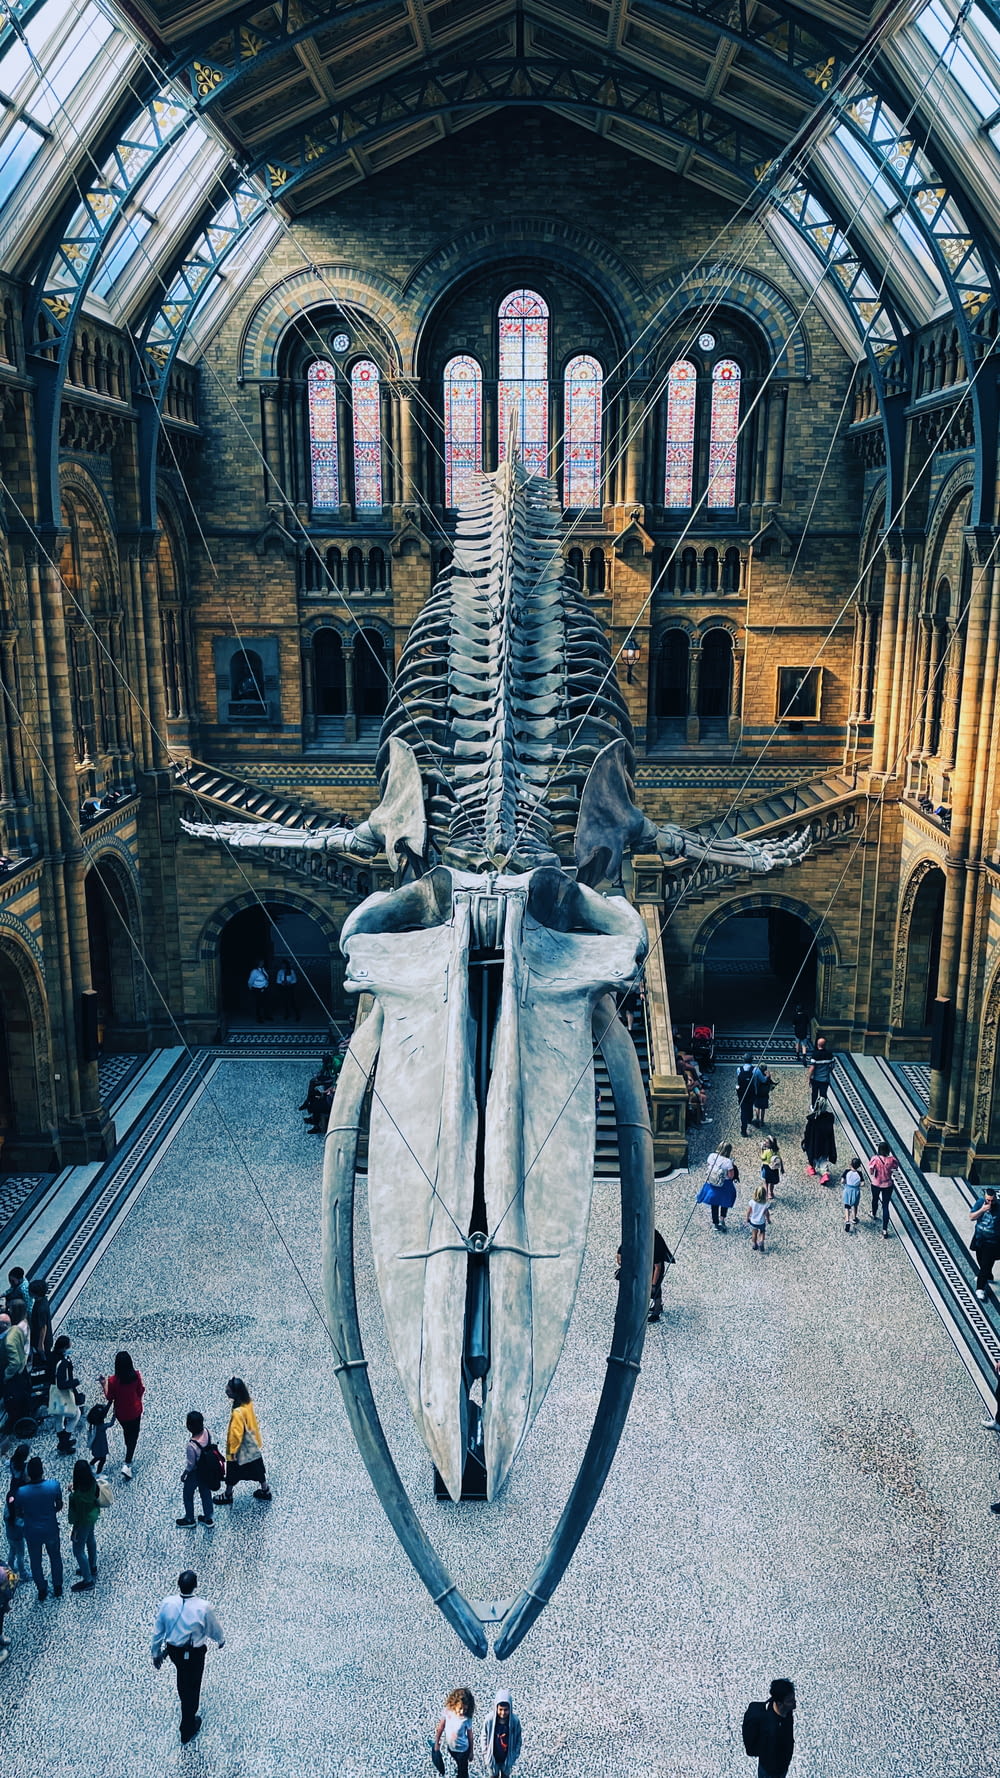 Un grande scheletro di balena in un museo con persone che camminano intorno